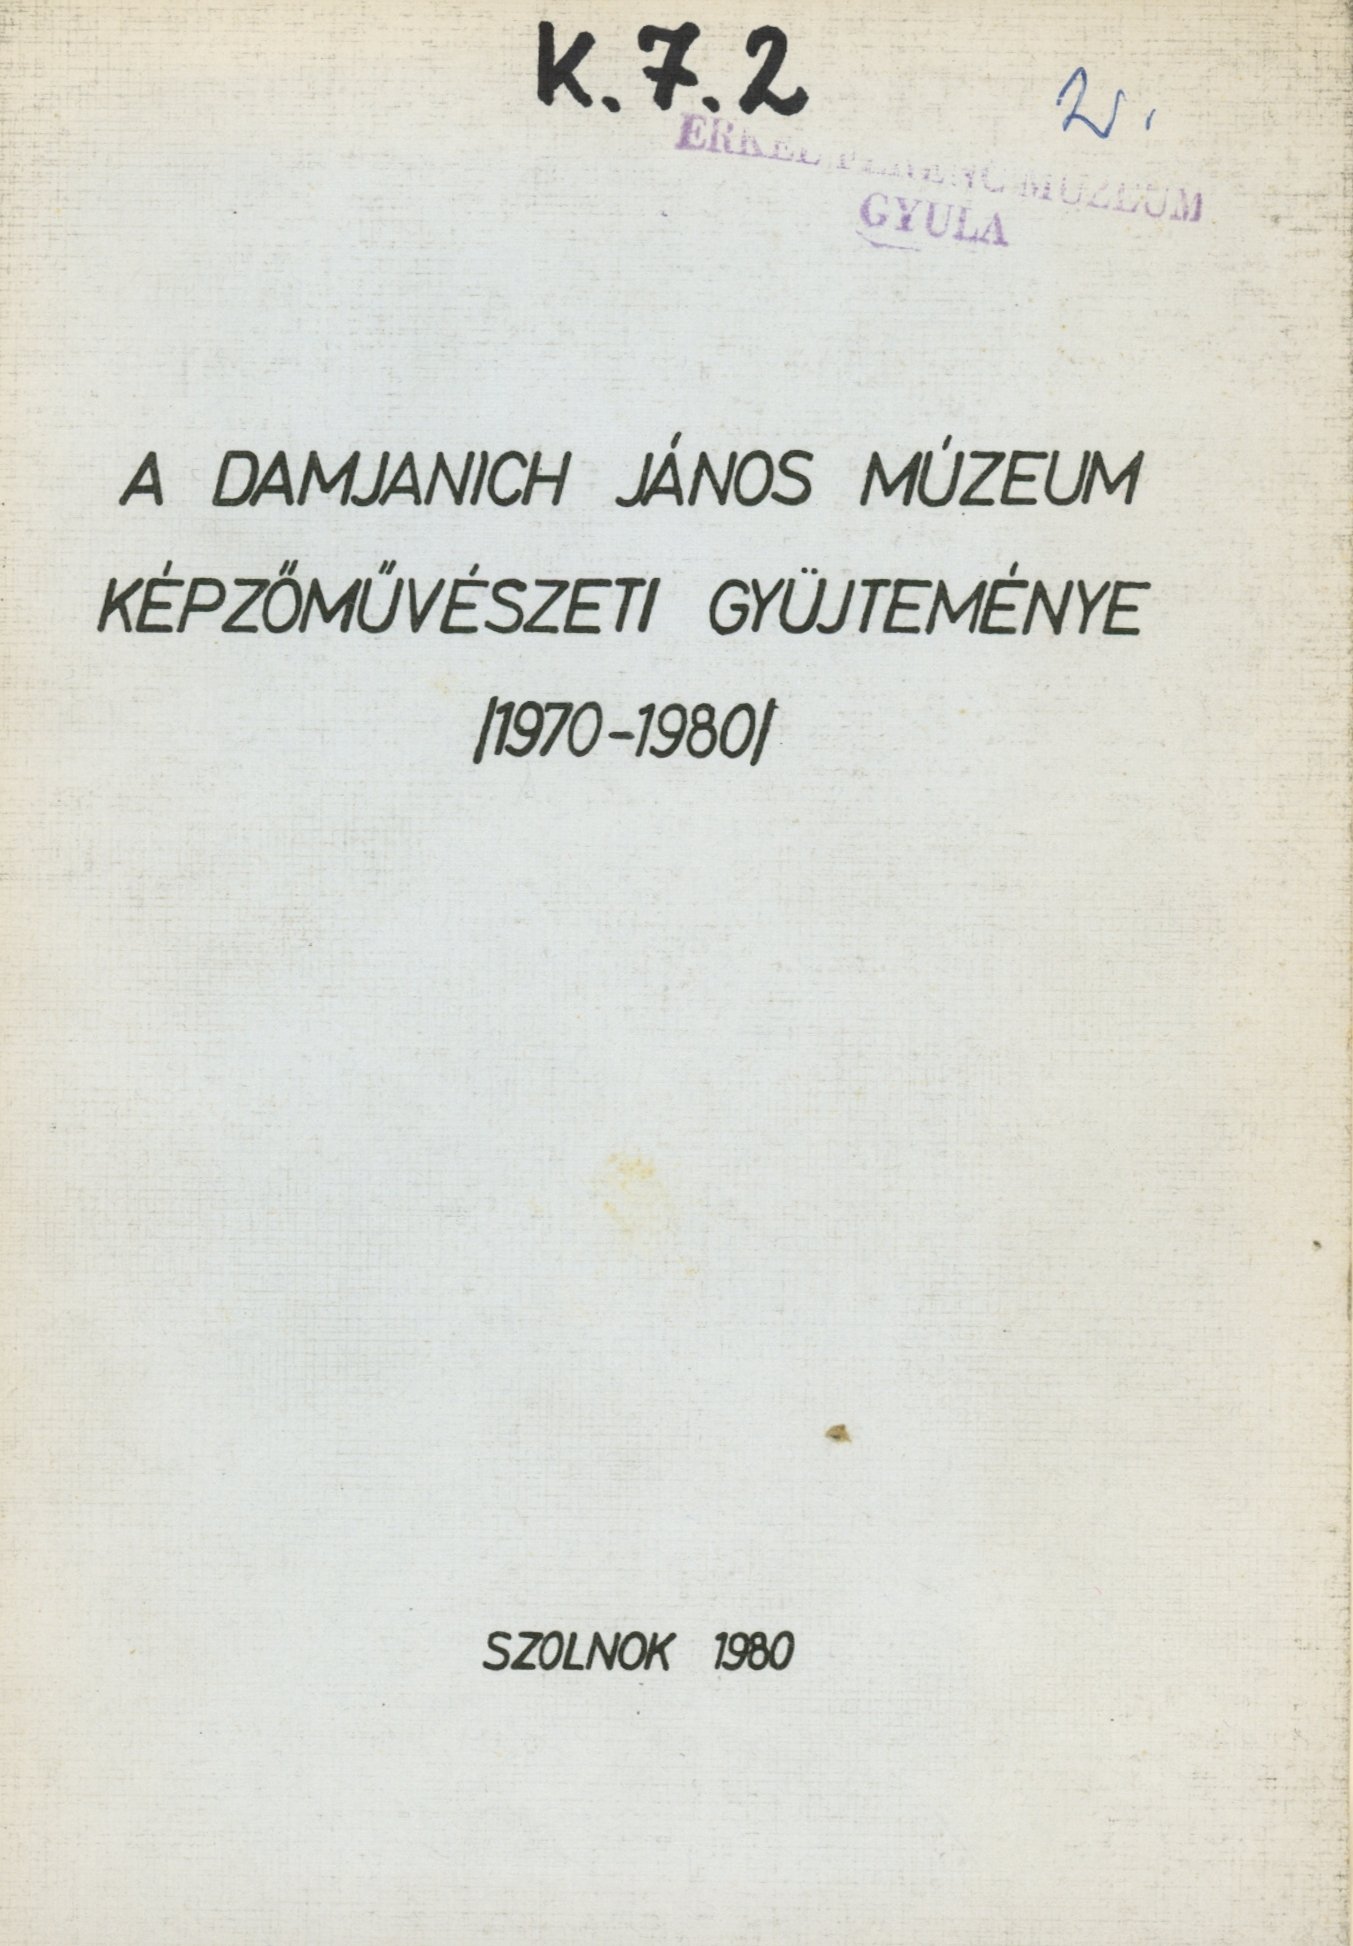 A Damjanich János Múzeum Képzőművészeti gyűjteménye (1970-1980) (Erkel Ferenc Múzeum és Könyvtár, Gyula CC BY-NC-SA)